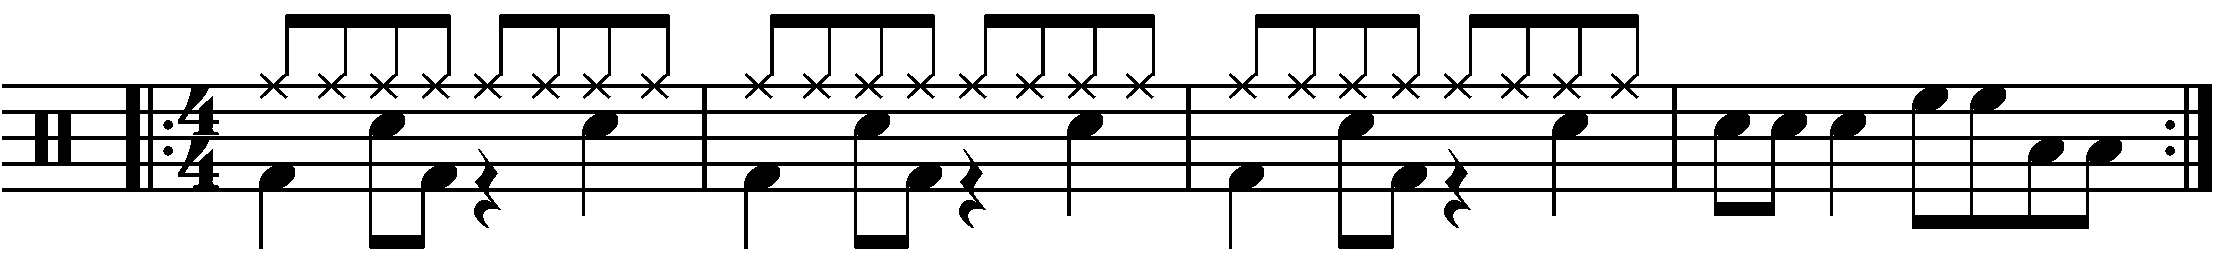 A four bar phrase using mixed rhythm fills.